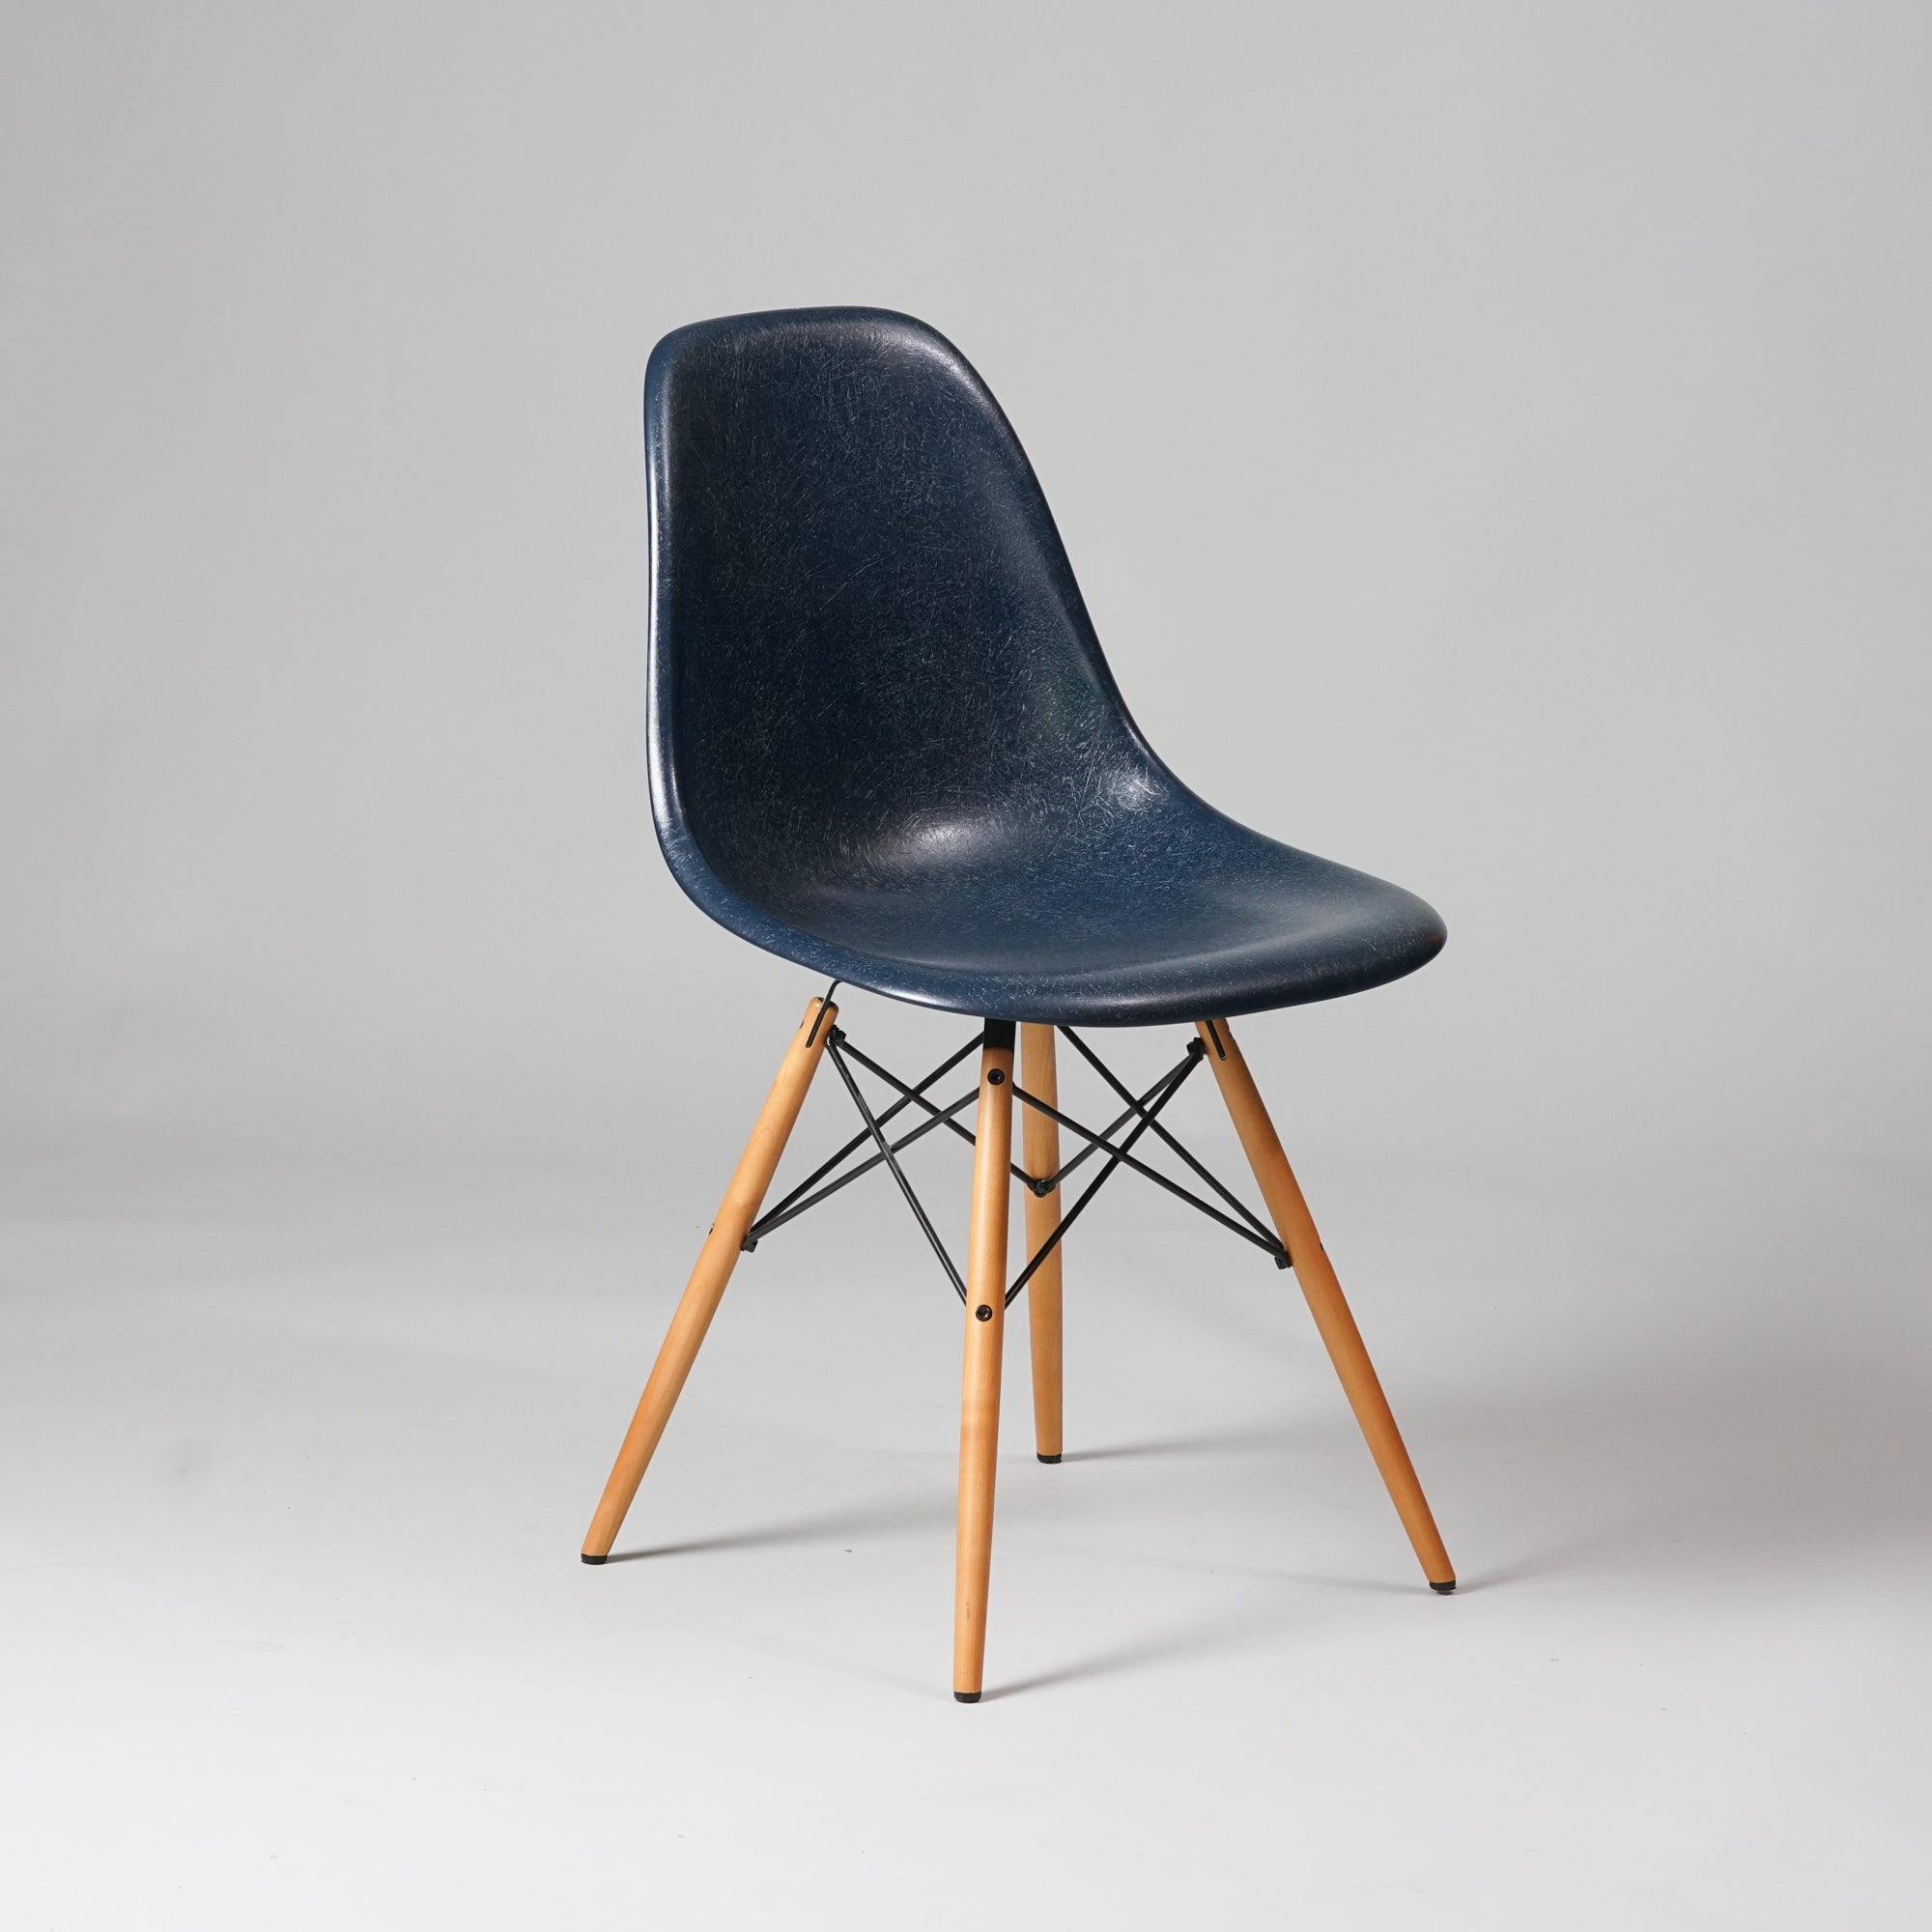 Tuoli, jonka jalat ovat vaahteraa ja jalkojen välissä olevat tangot metallia. Tummansininen istuinosa on lasikuitua.